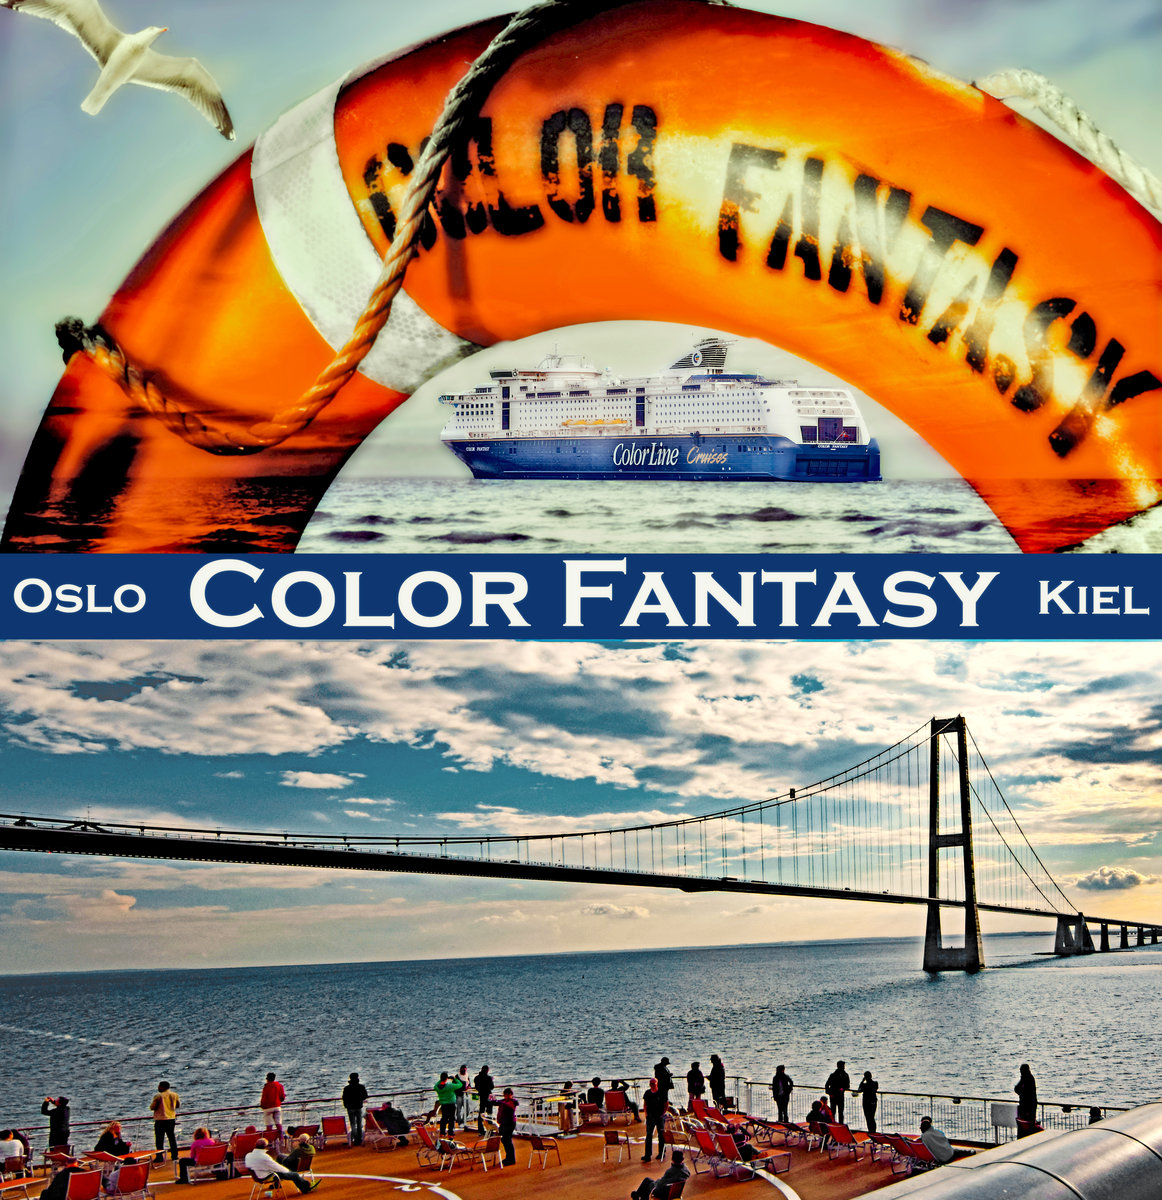 Color-Line Fähre COLOR FANTASY in der Ostsee. Das Schiff verkehrt zwischen Kiel und Oslo. Die Storebelt-Brücke, die während der Fahrt passiert wird, ist sehr sehenswert